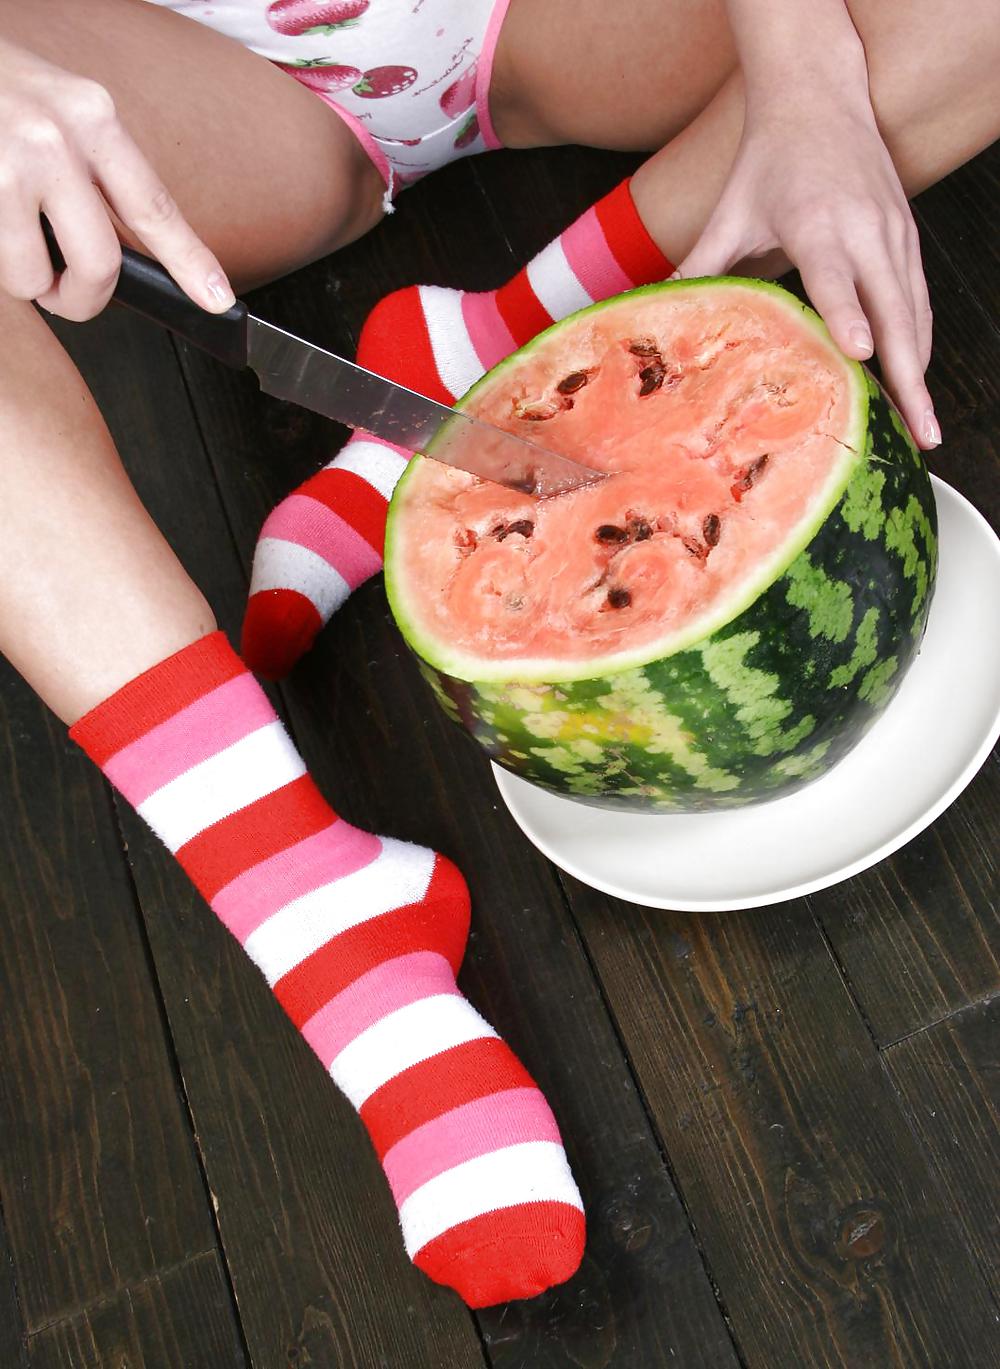 Cute Christina - Eating a watermelon #4556167